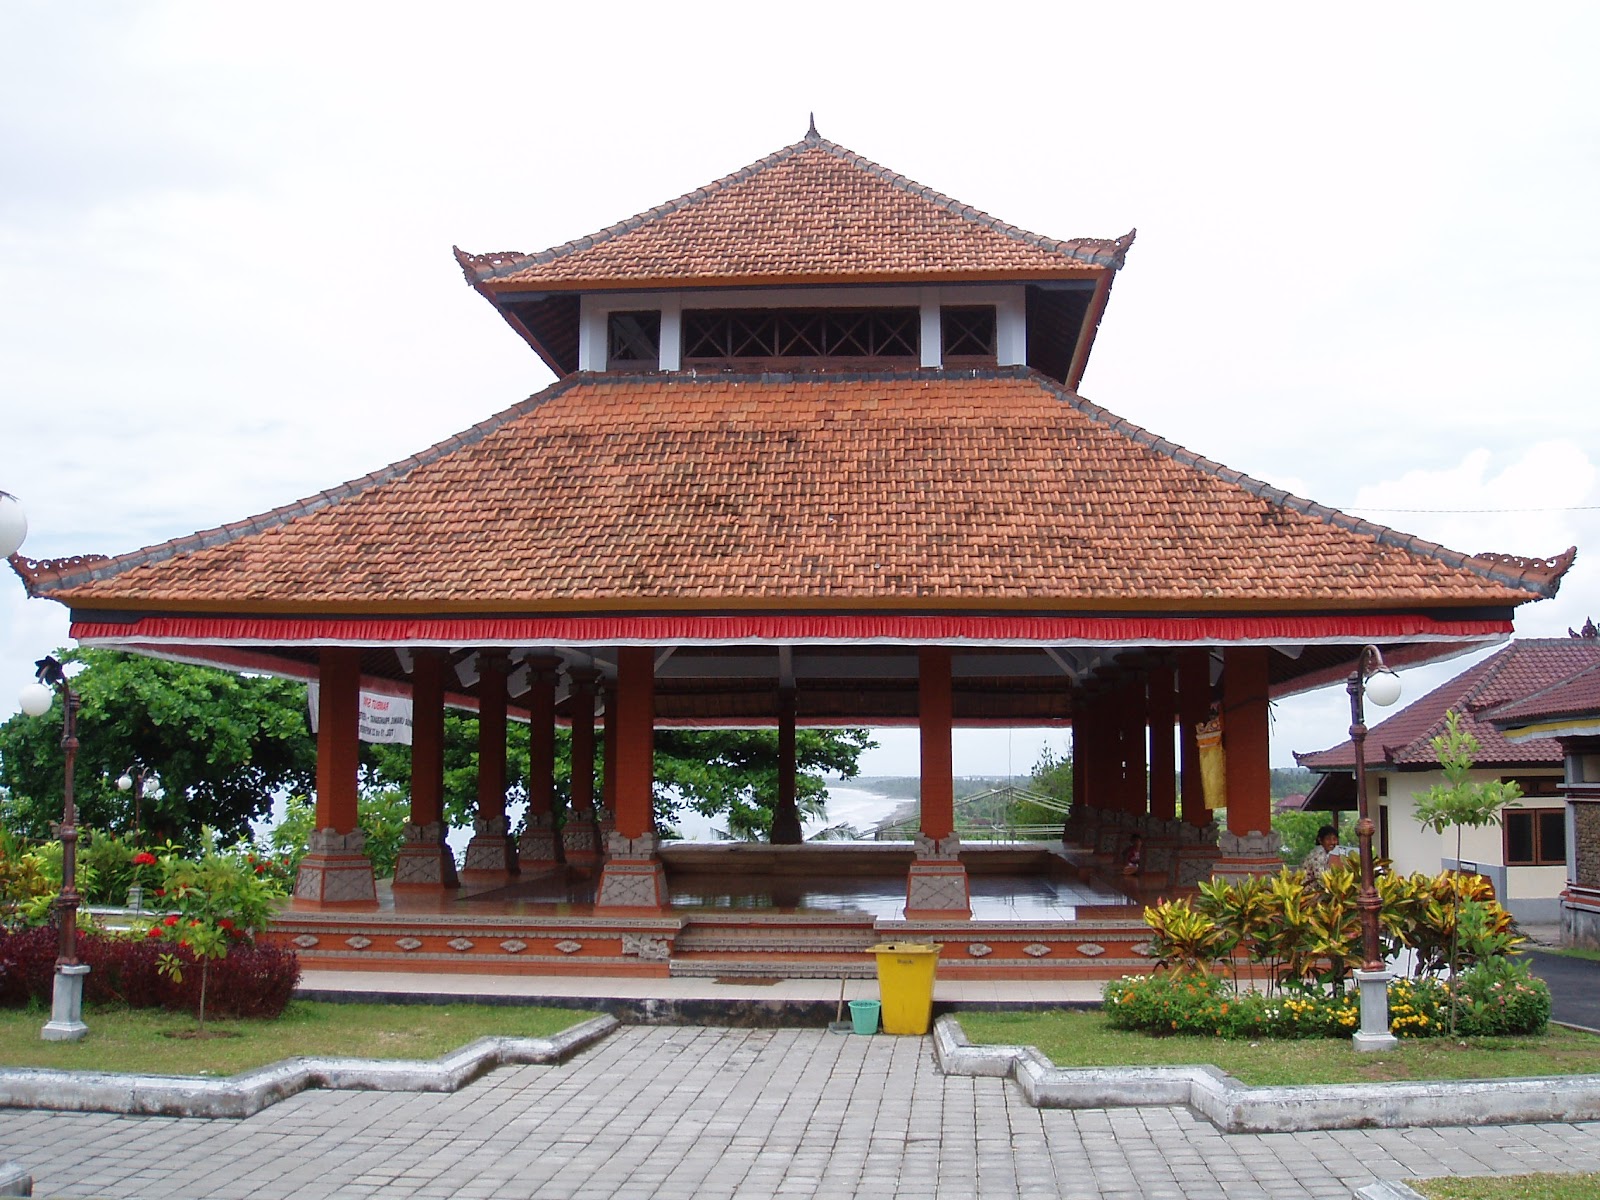 Rambut Siwi Temple